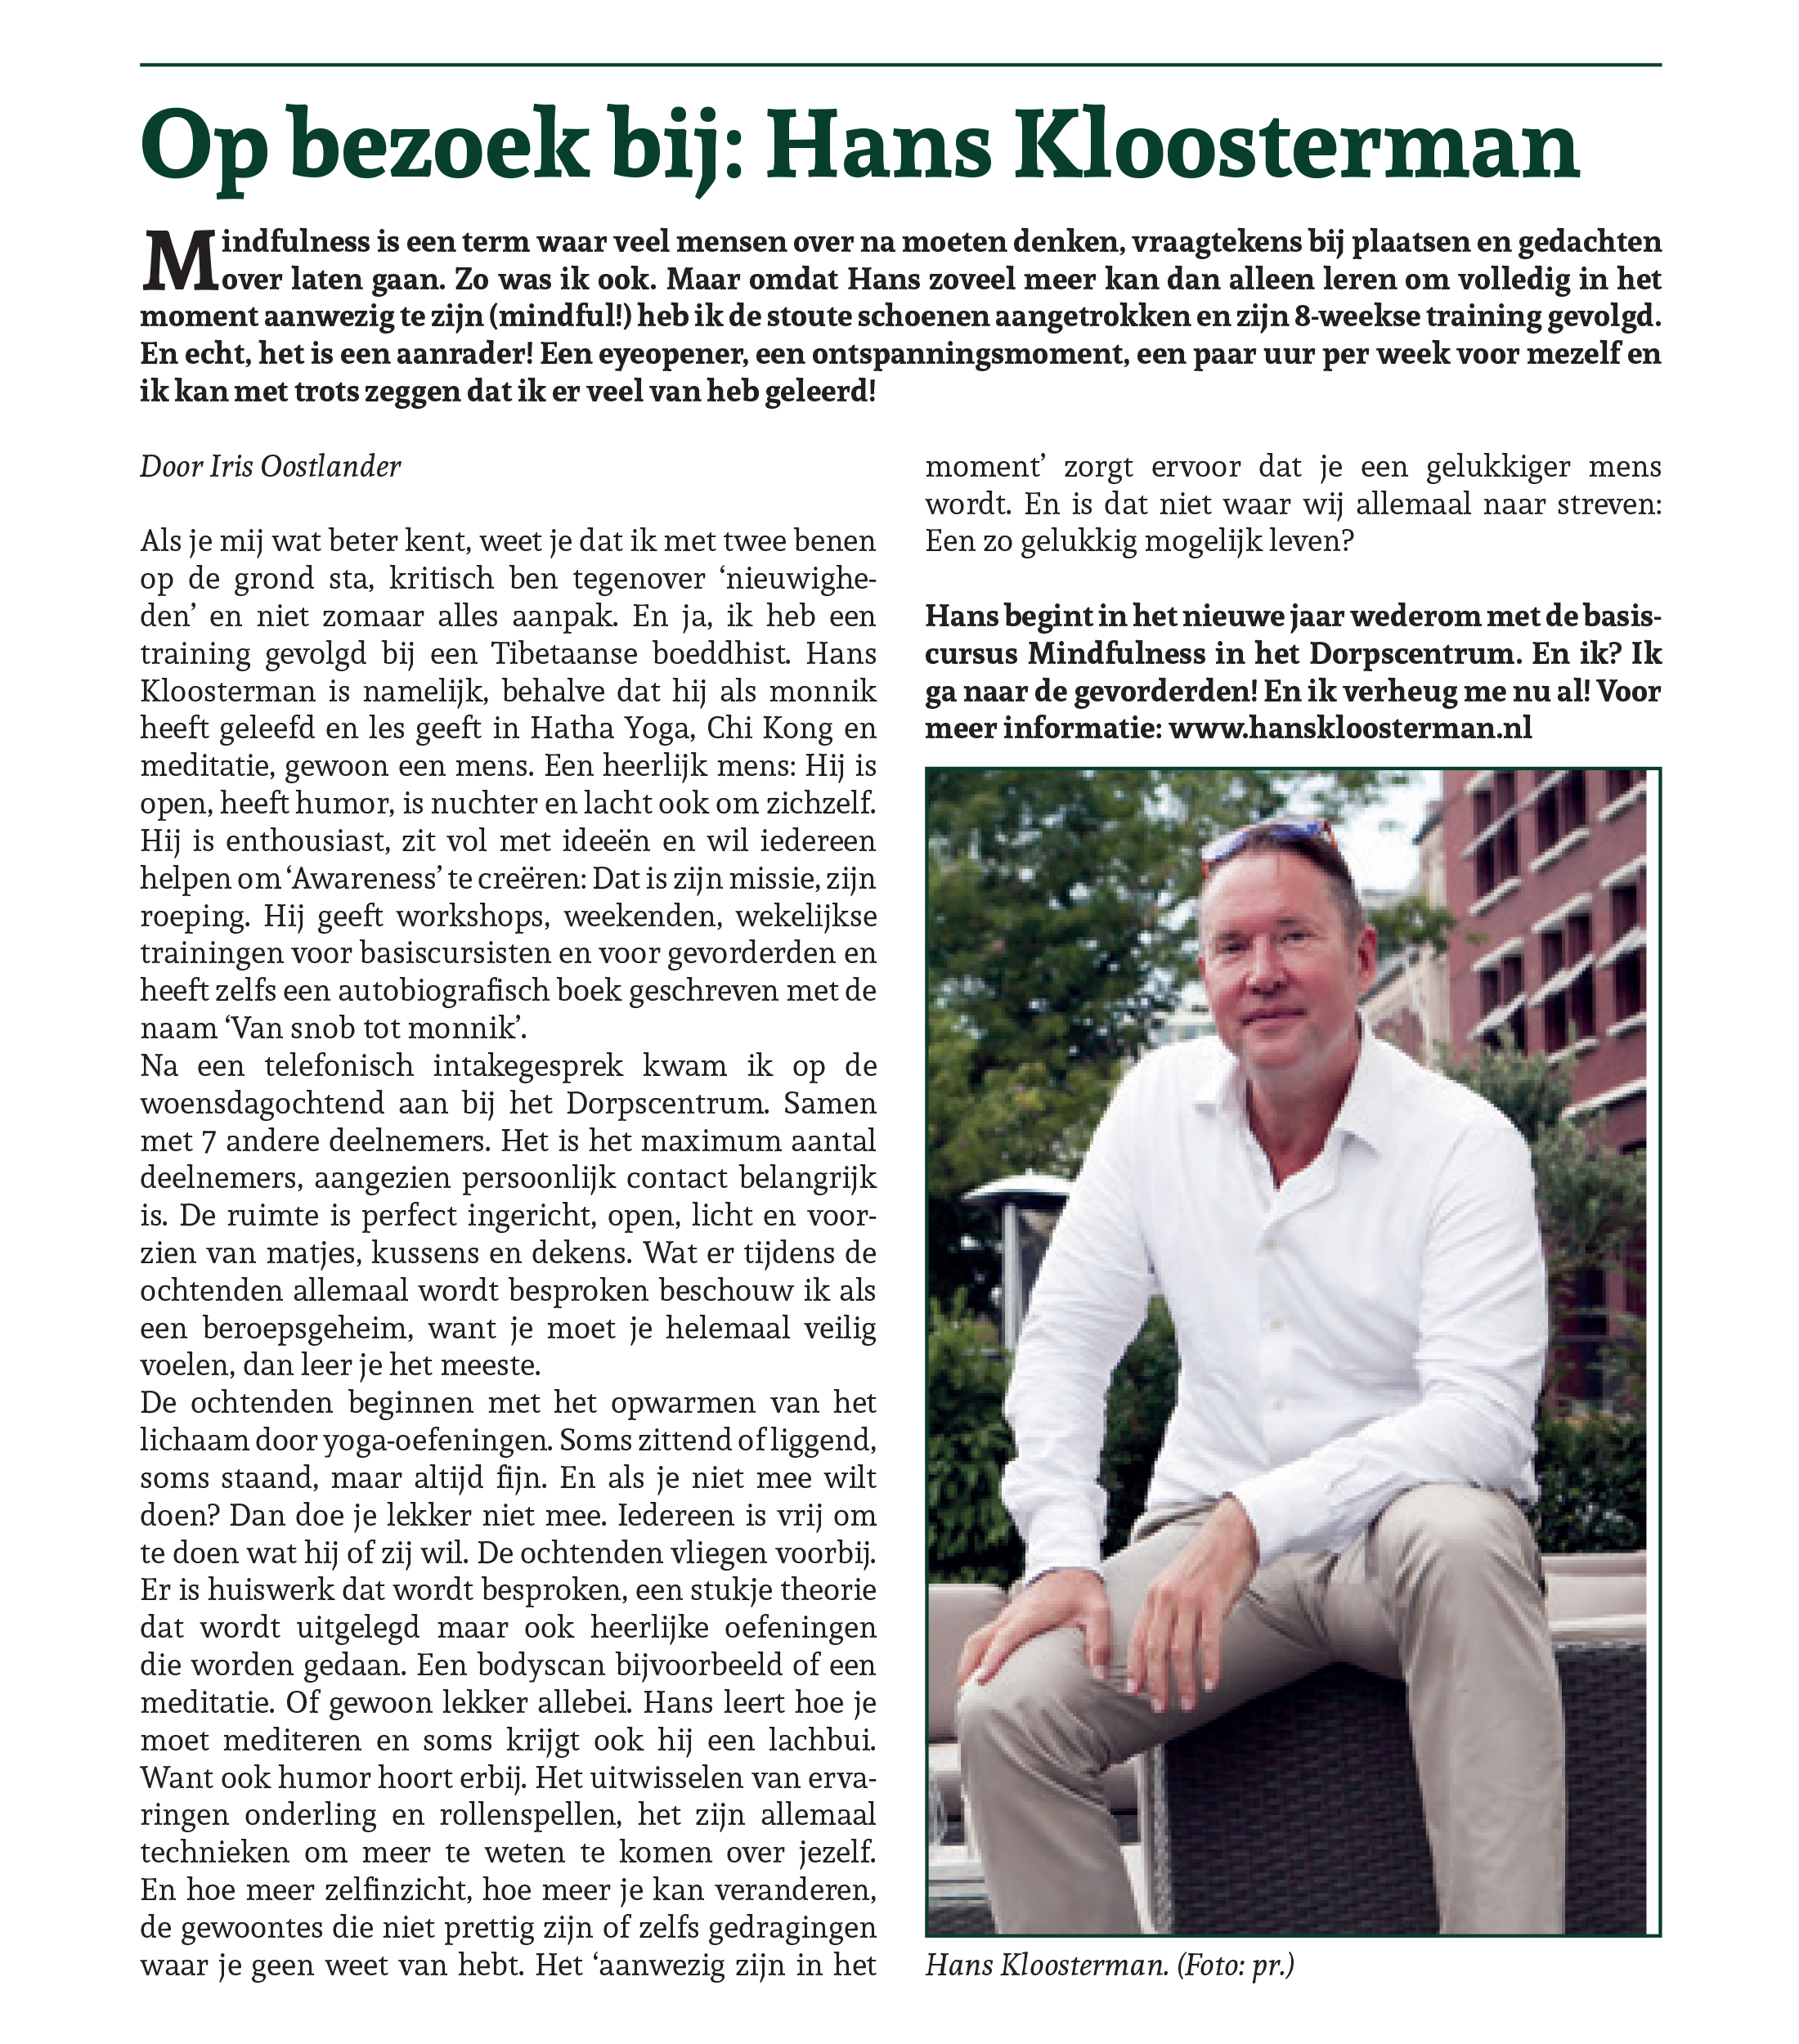 Interview van Snob Tot Monnik in de Wassenaarse Krant